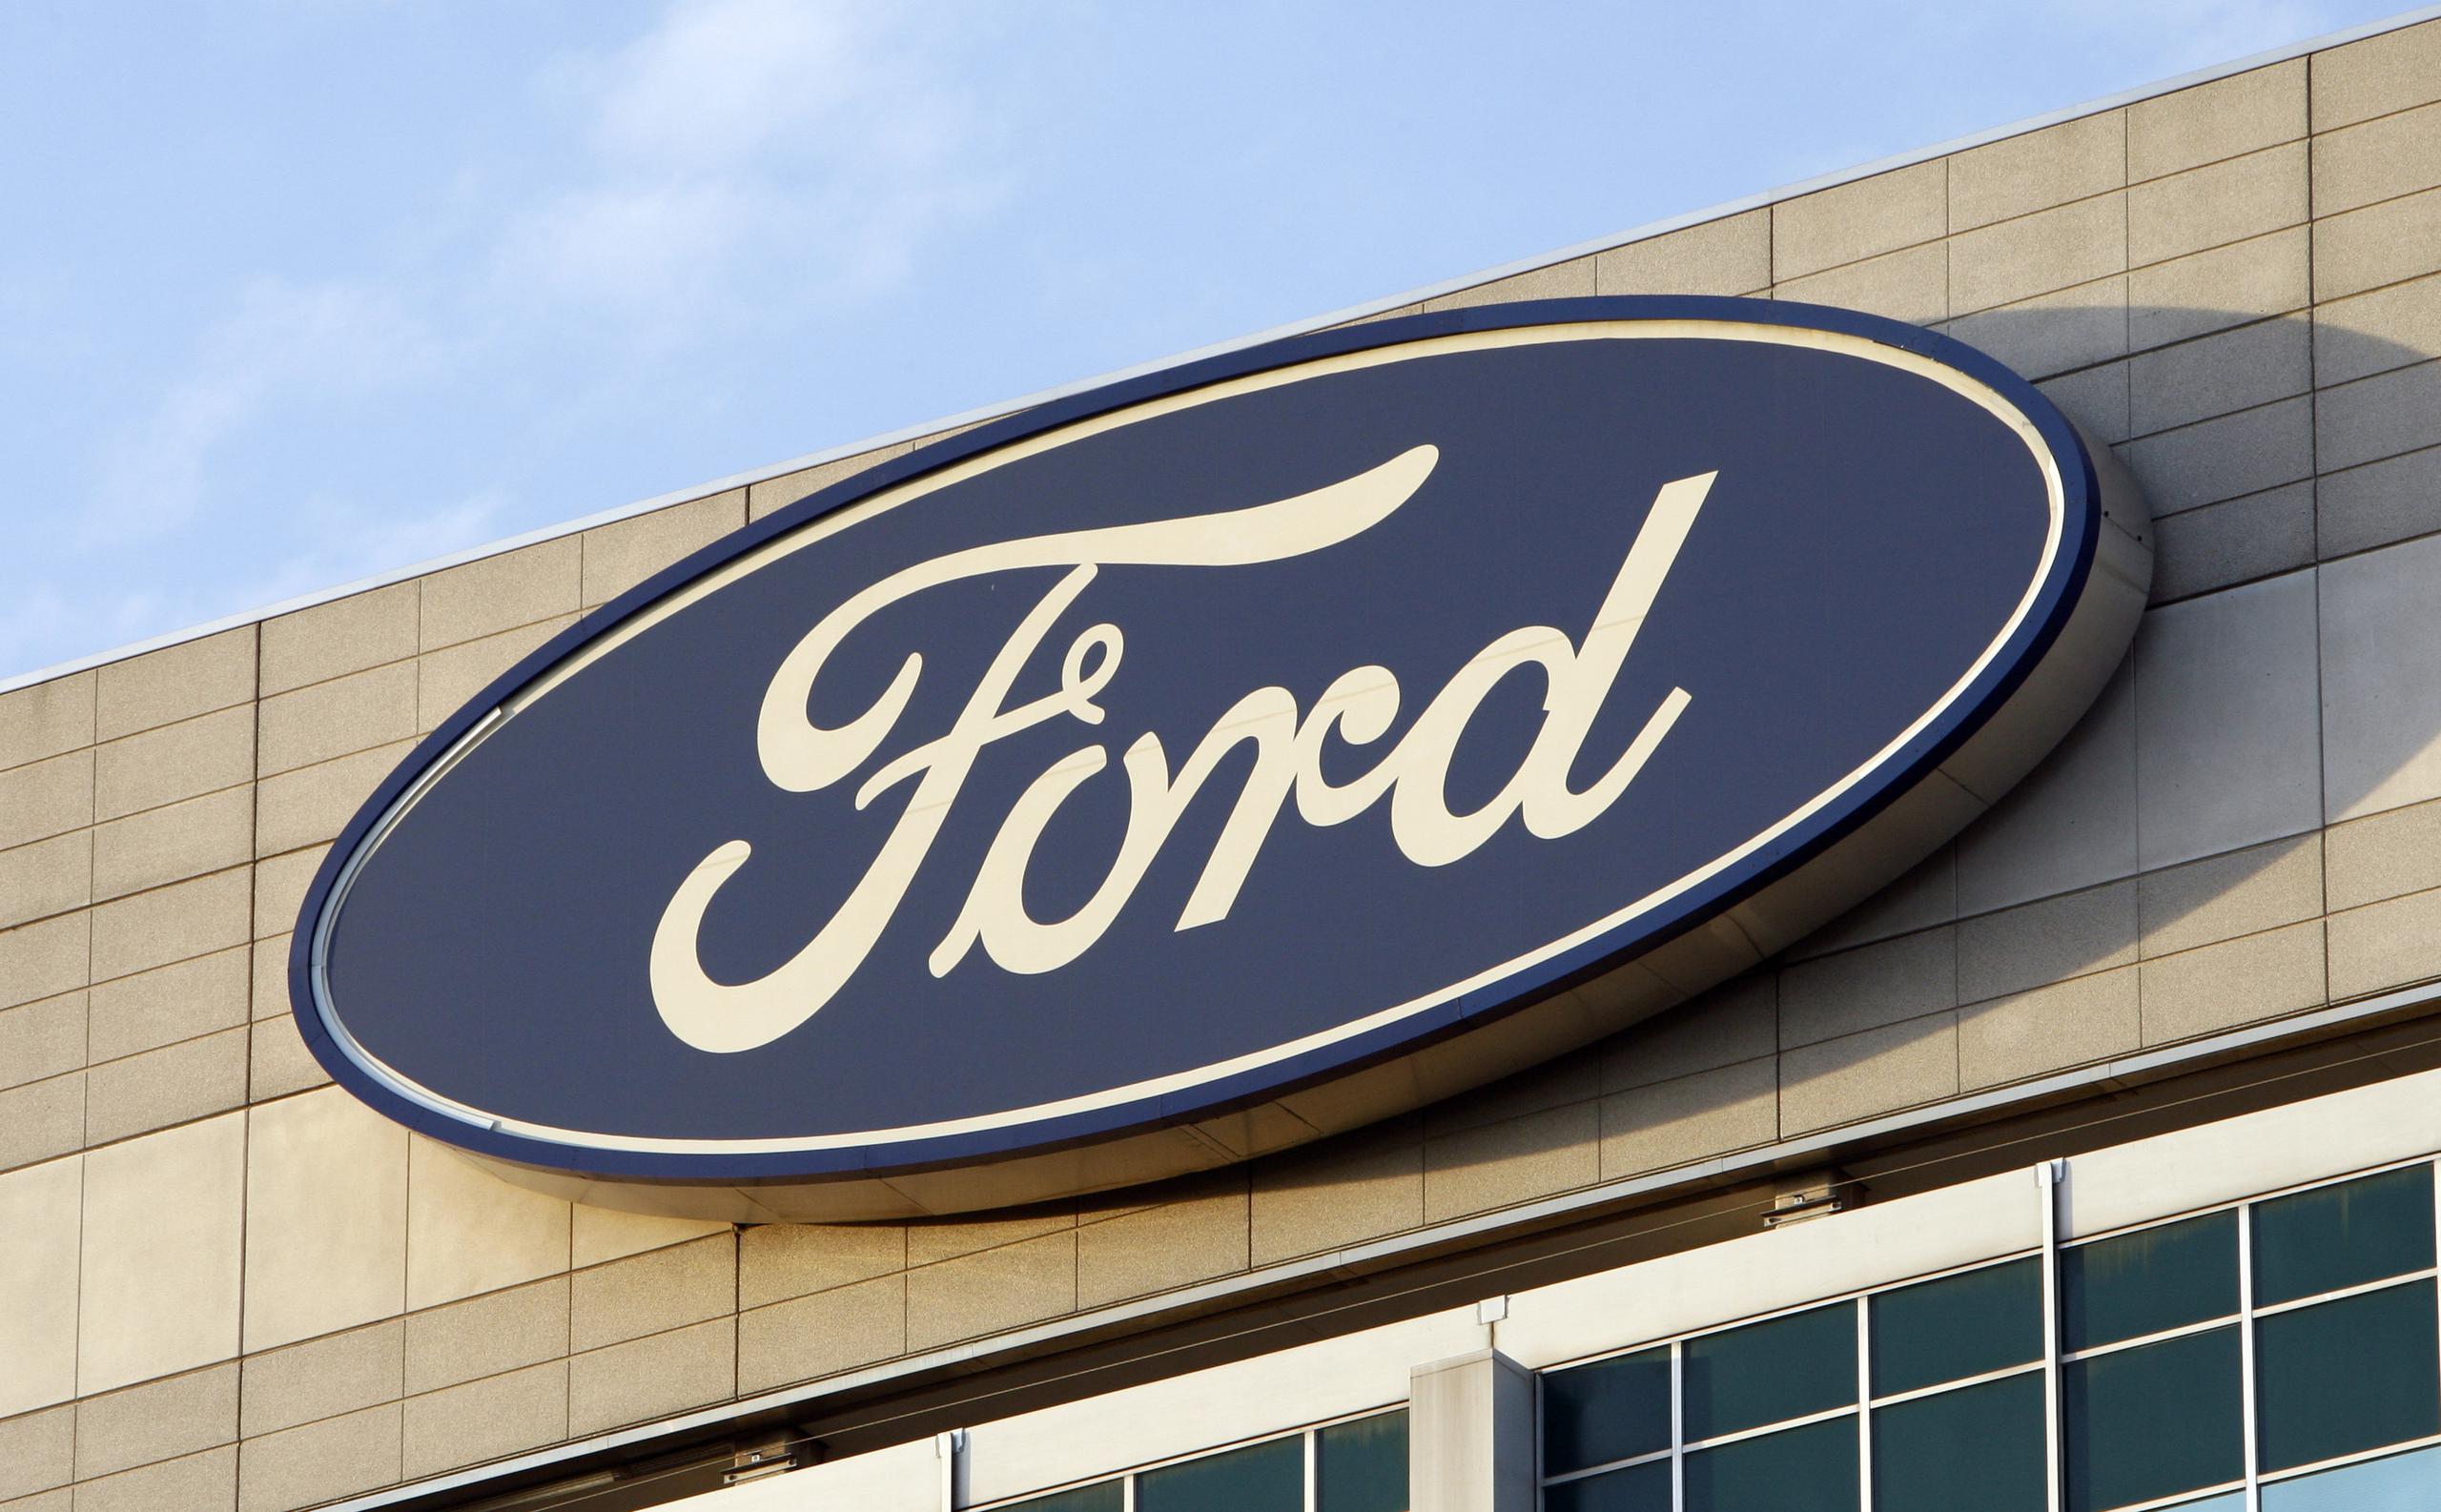 Ford no ha respondido de momento a pedidos de comentarios, pero en los argumentos finales del juicio, sus abogados defendieron la labor de la compañía y de sus ingenieros.